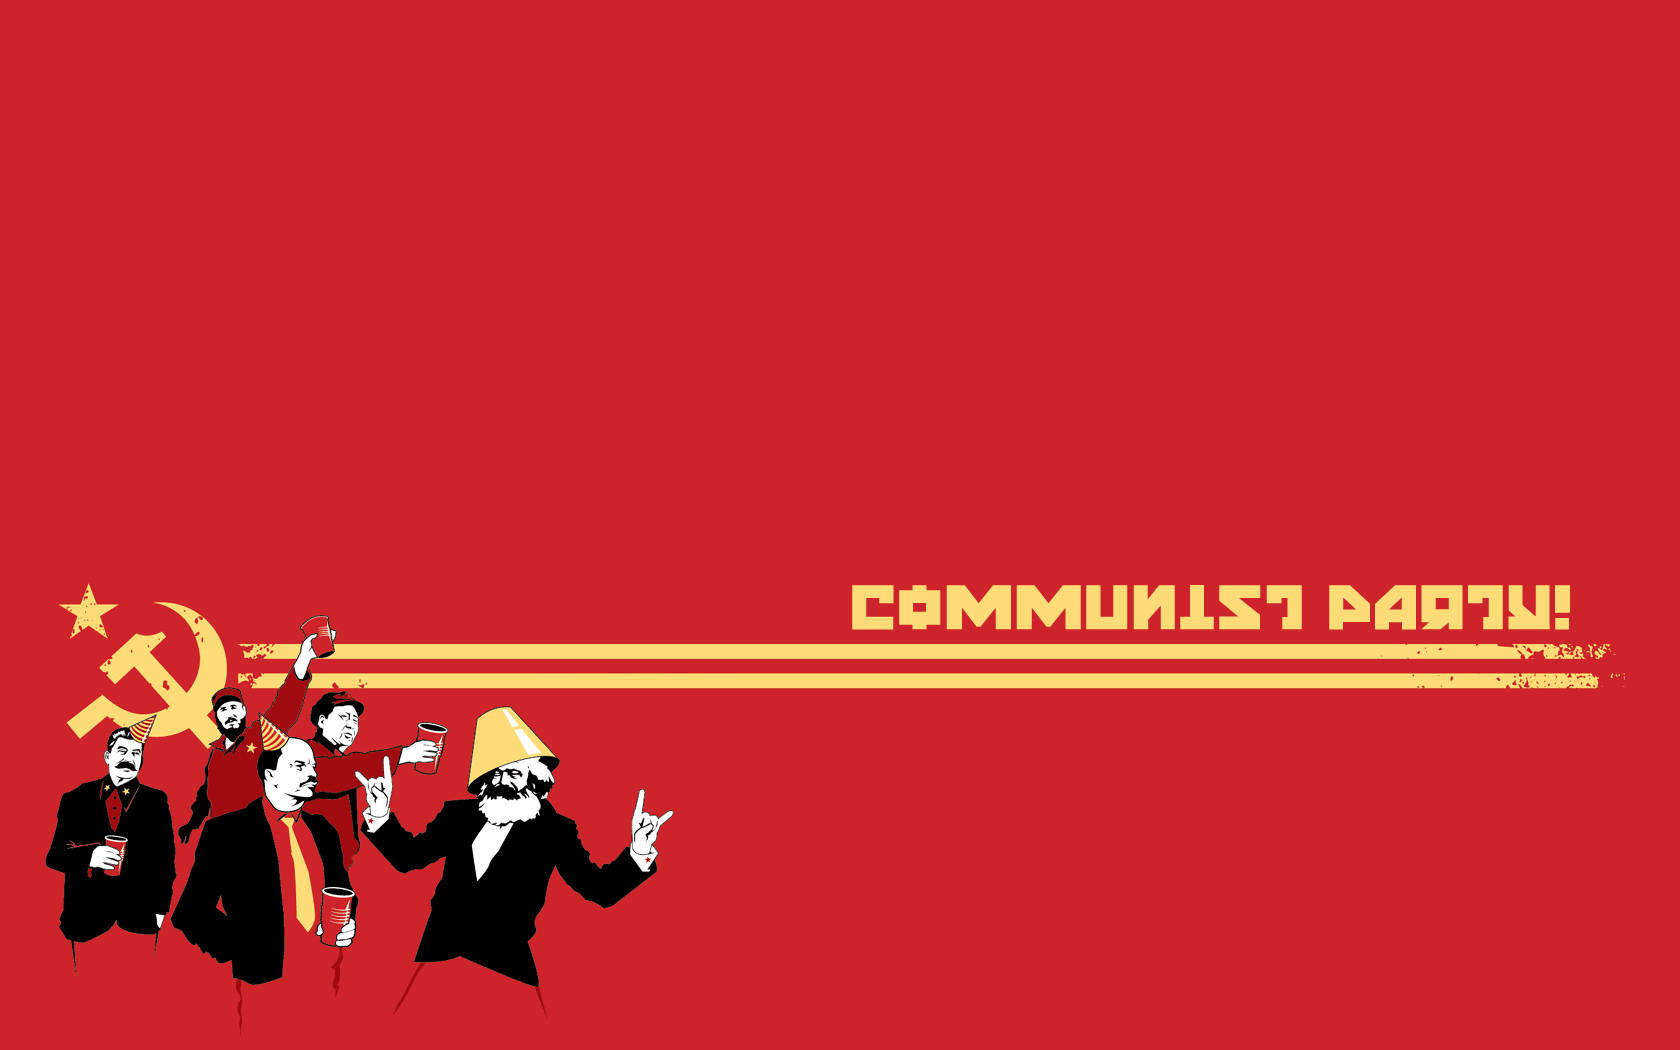 Sovjetunionens flag af kommunisterne Wallpaper